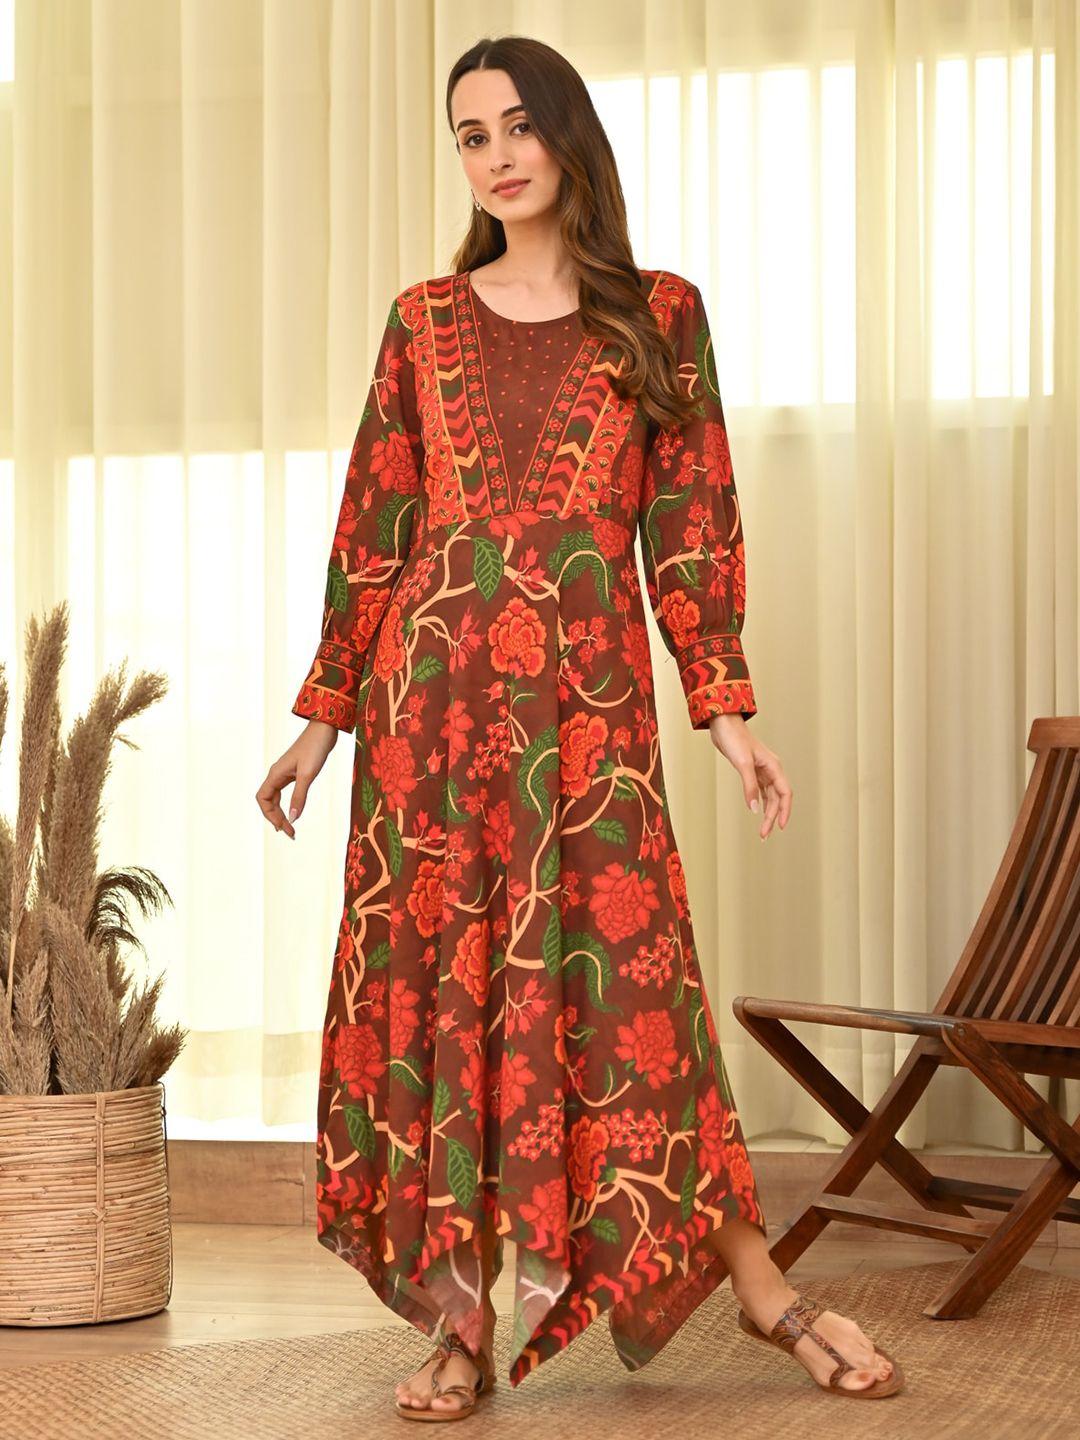 rustorange floral printed bishop sleeves asymmetric a-line ethnic dress